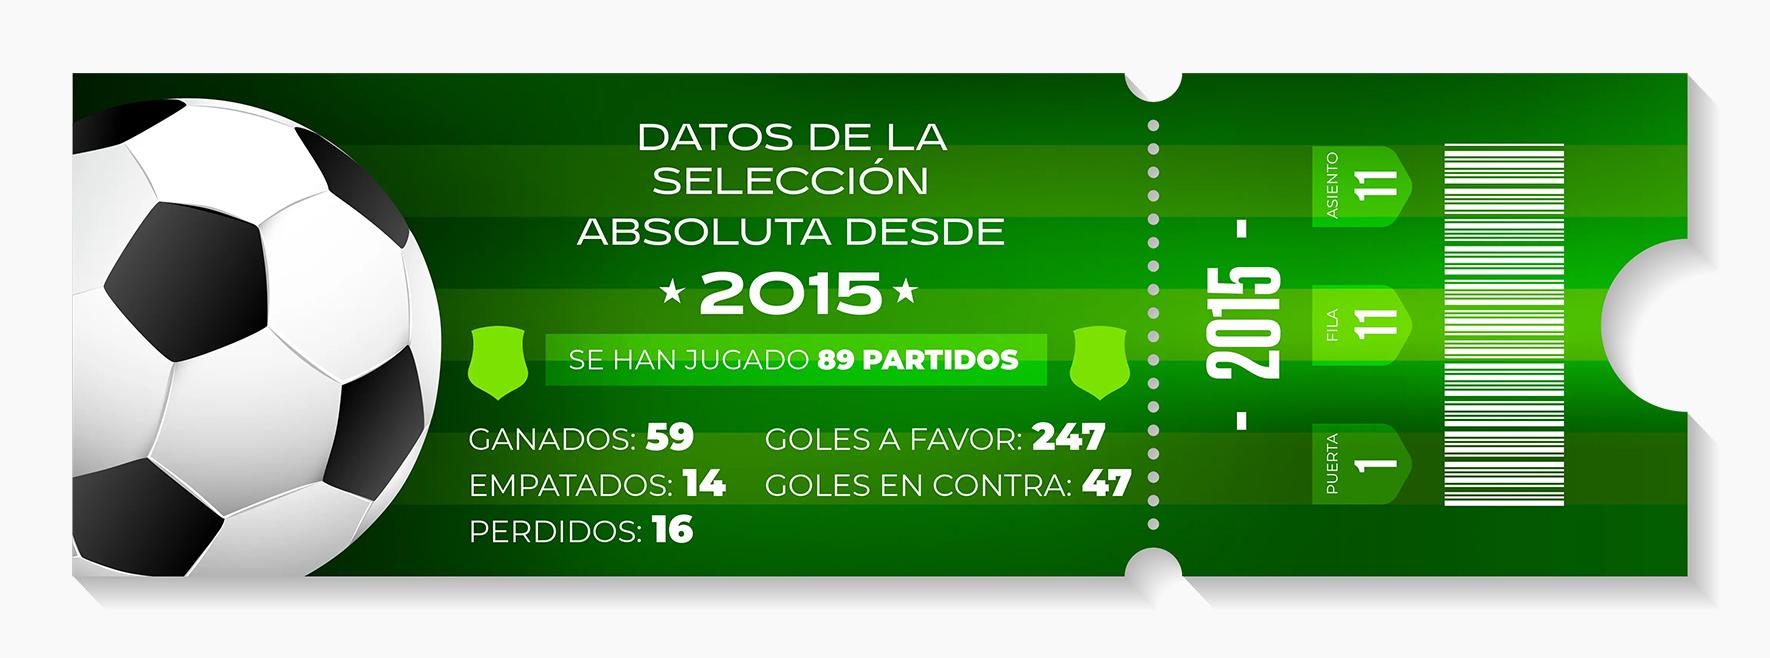 Datos de la Selección absoluta desde 2015